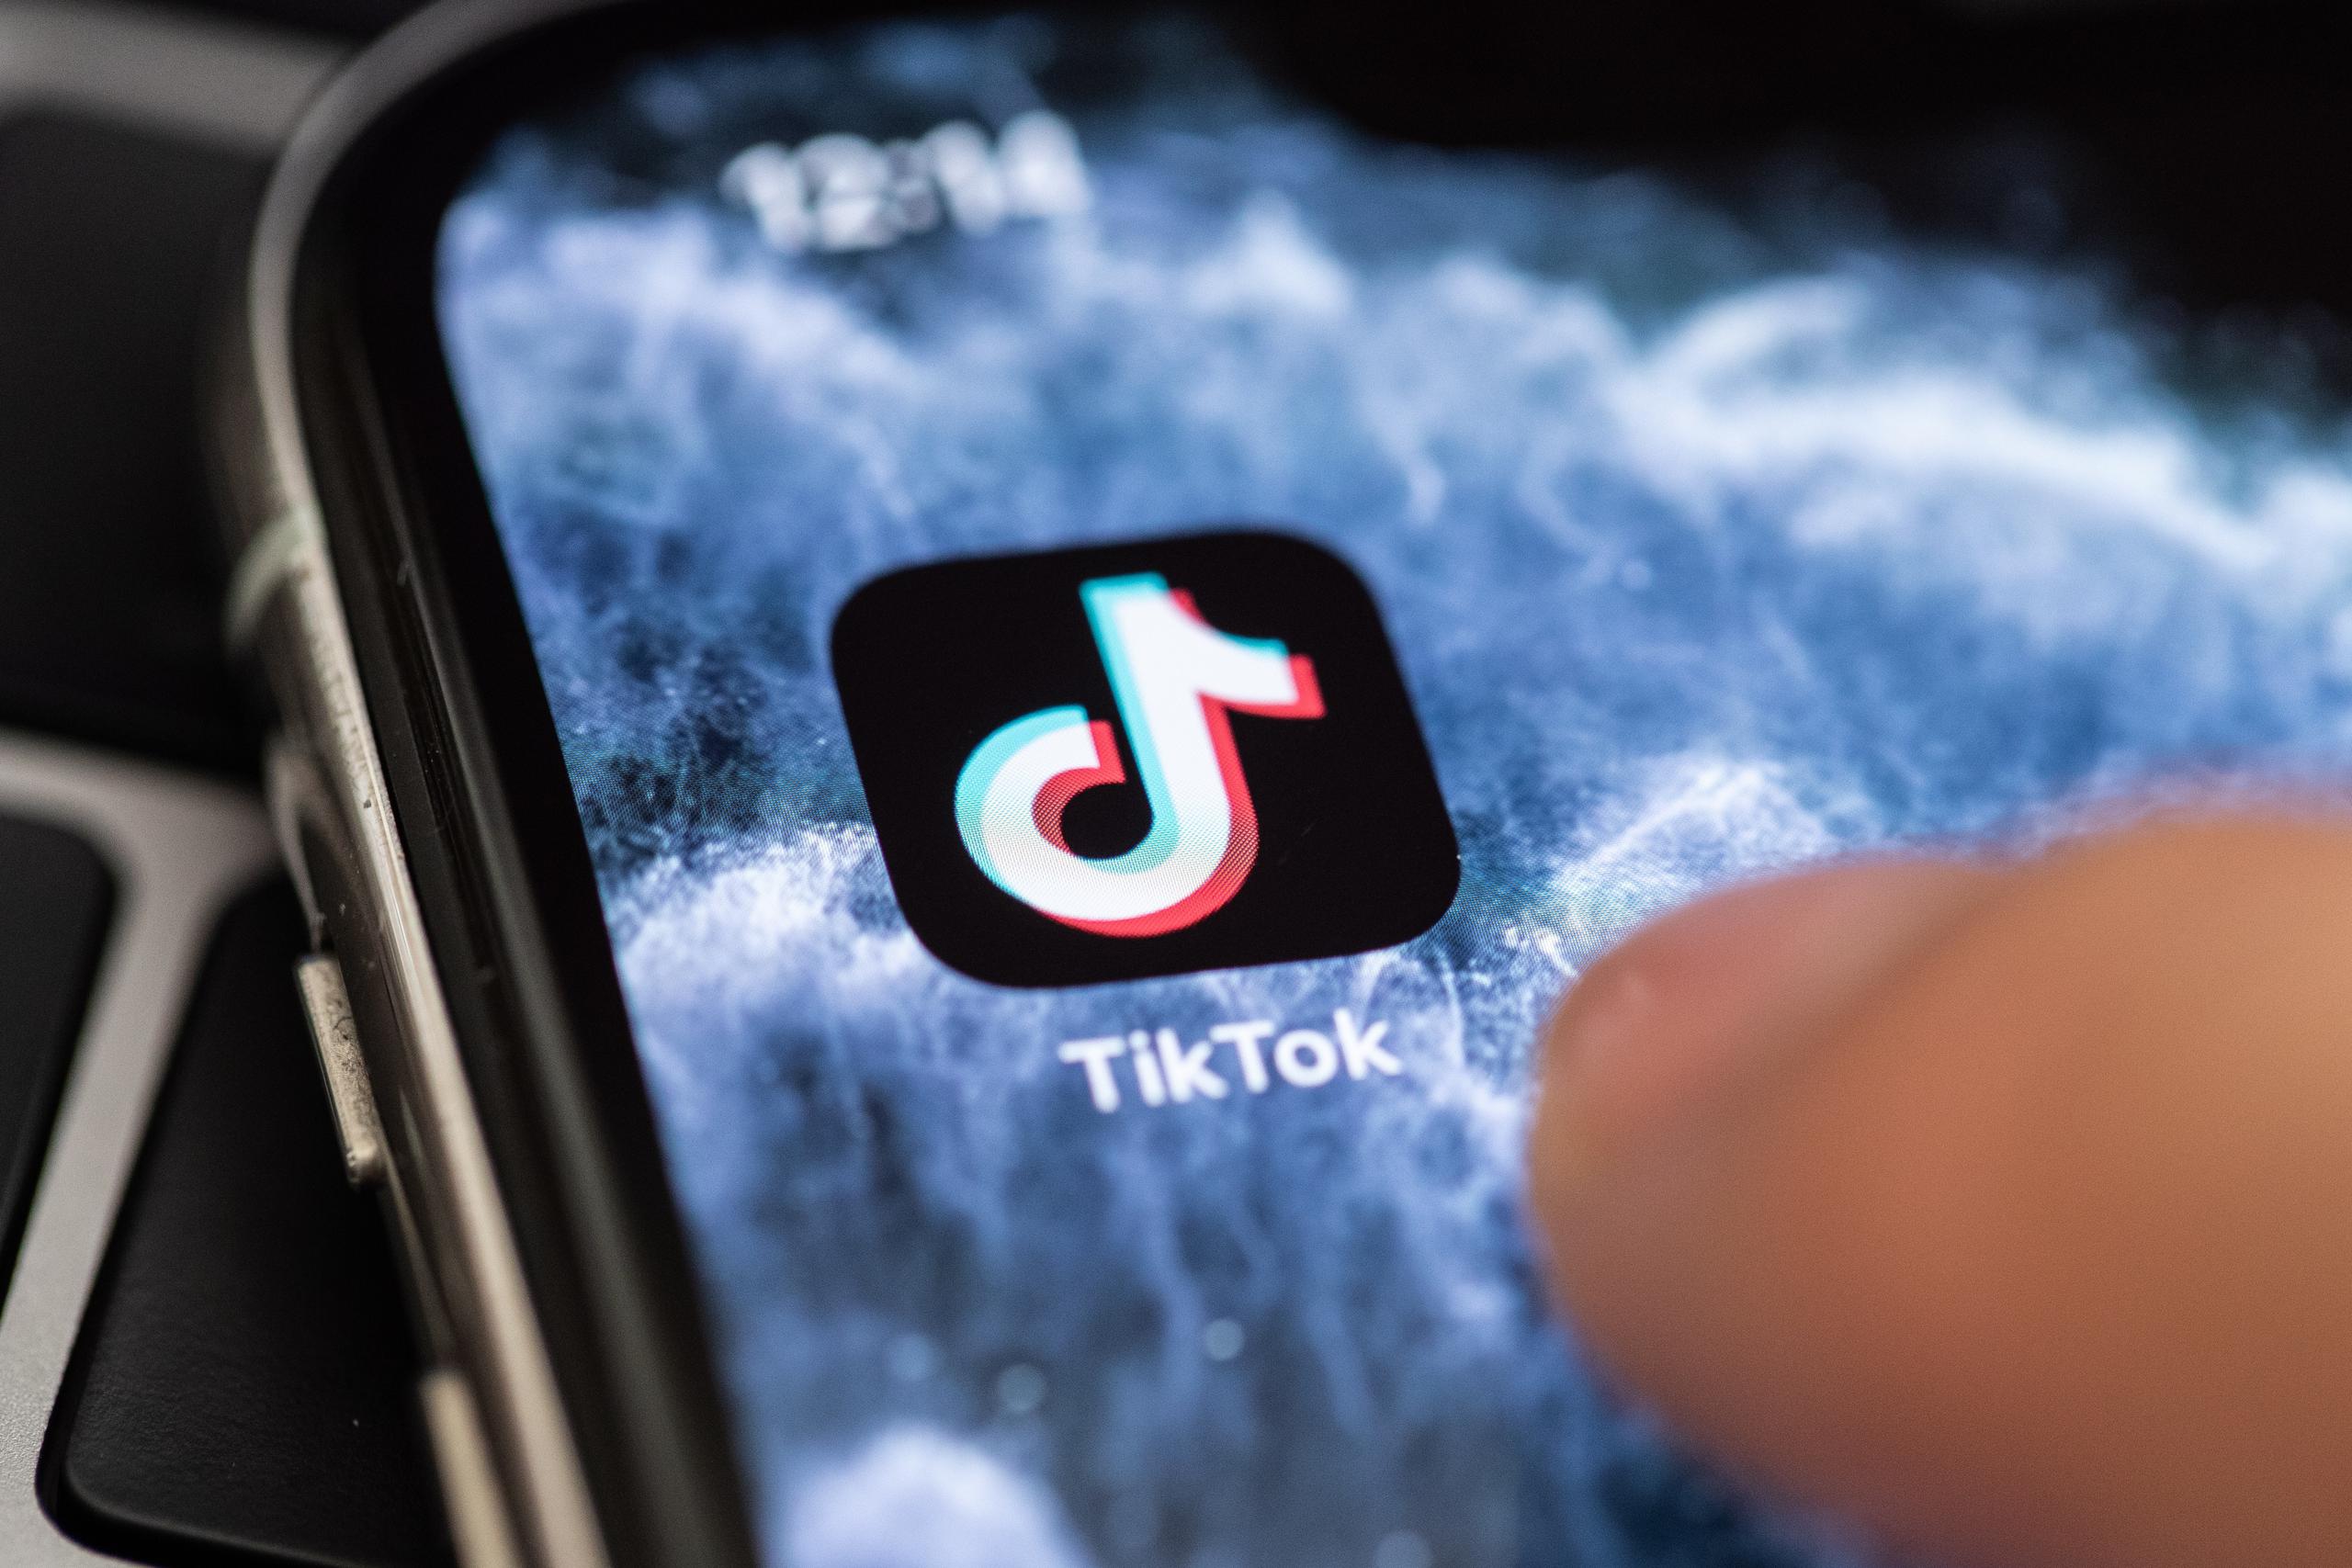 Vista del ícono de la aplicación TikTok en un celular.